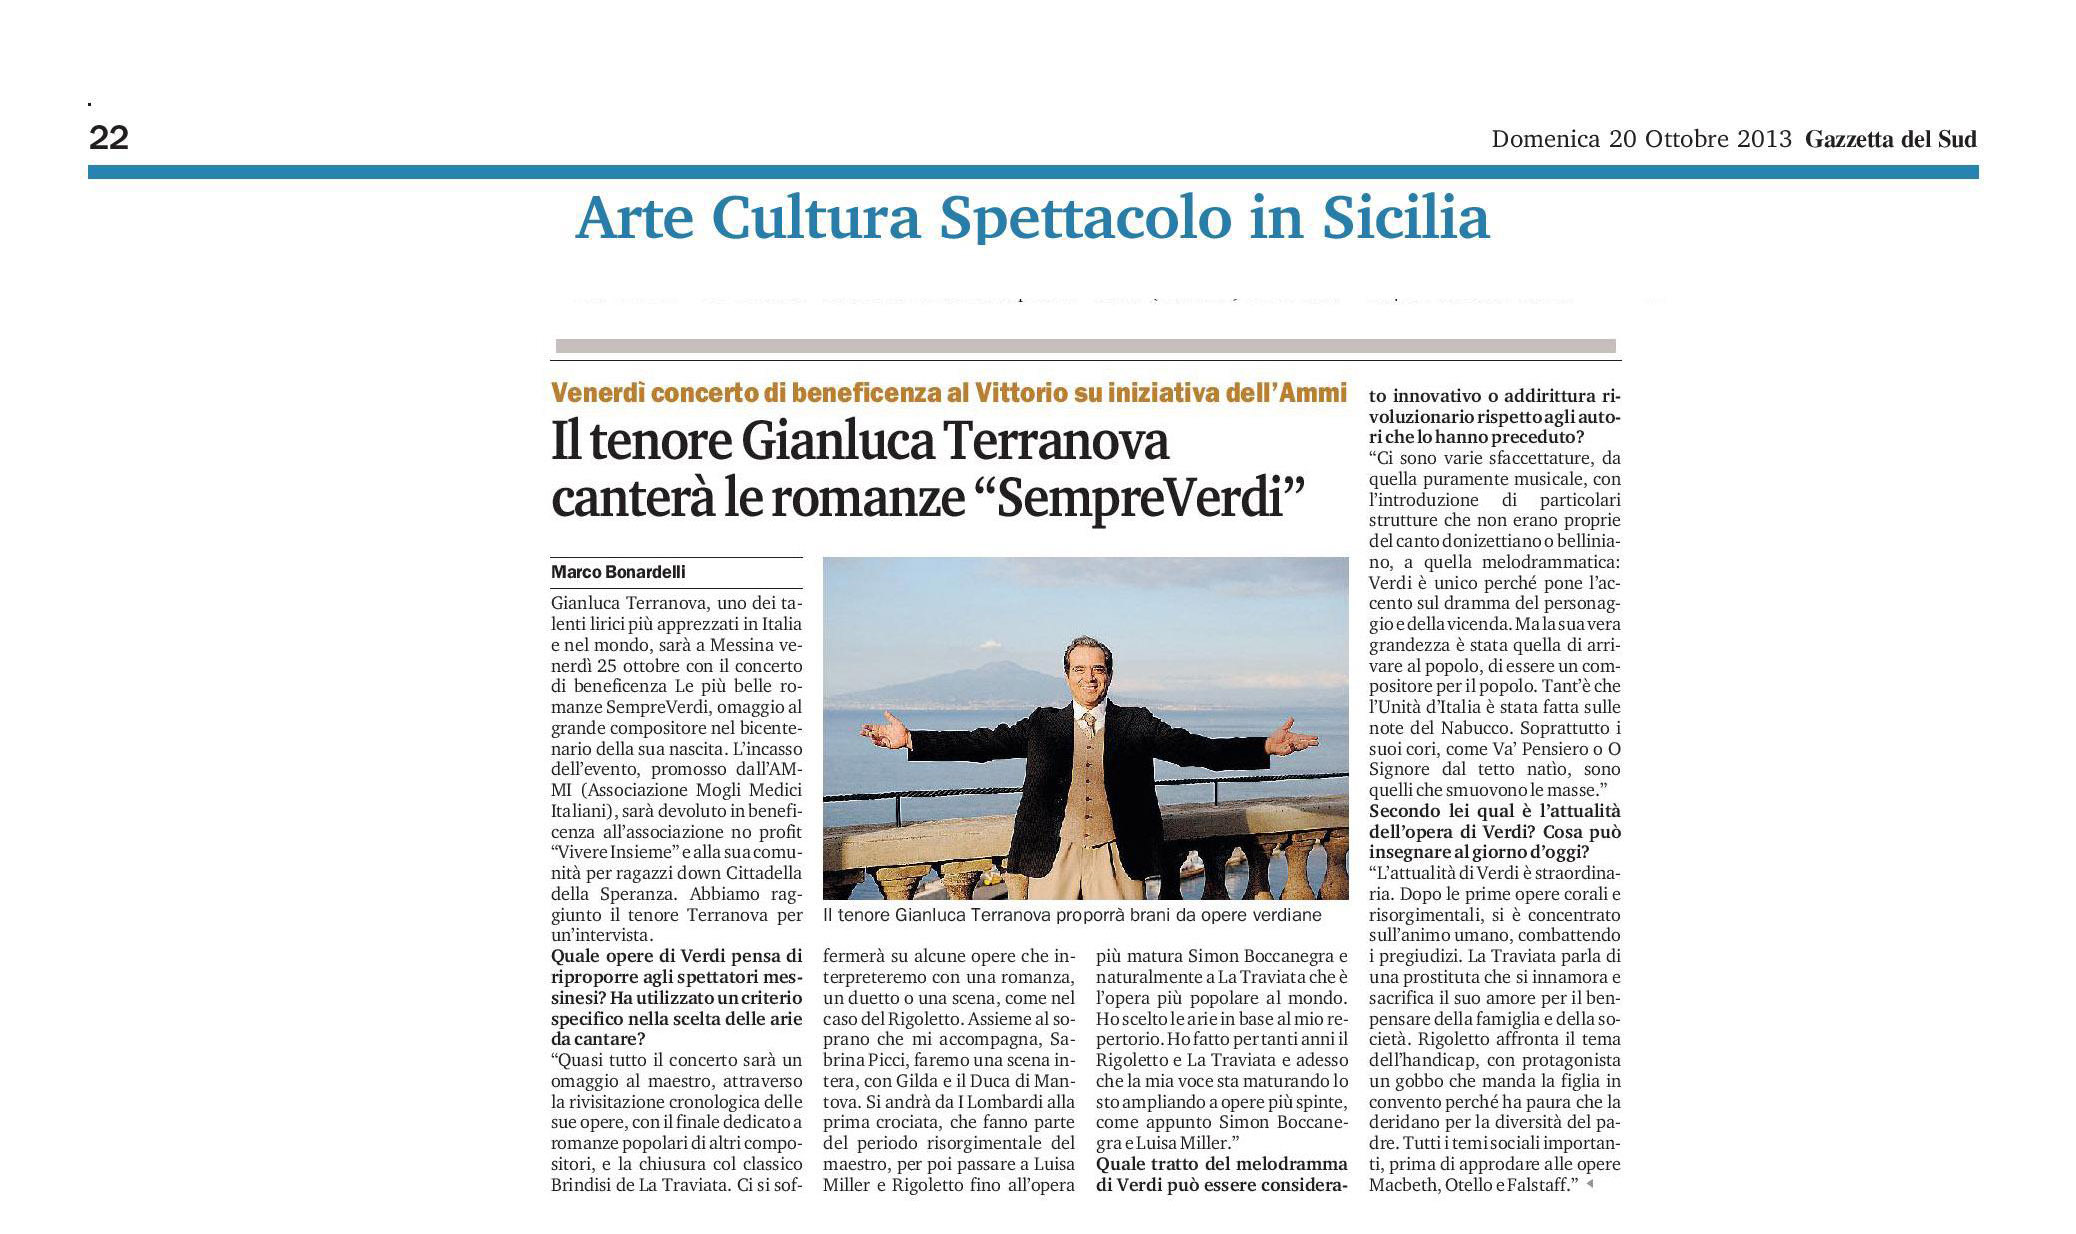 32 - Il tenore Gianluca Terranova canterà le romanze SempreVerdi - Gazzetta del Sud - 20 ottobre 2013.jpg